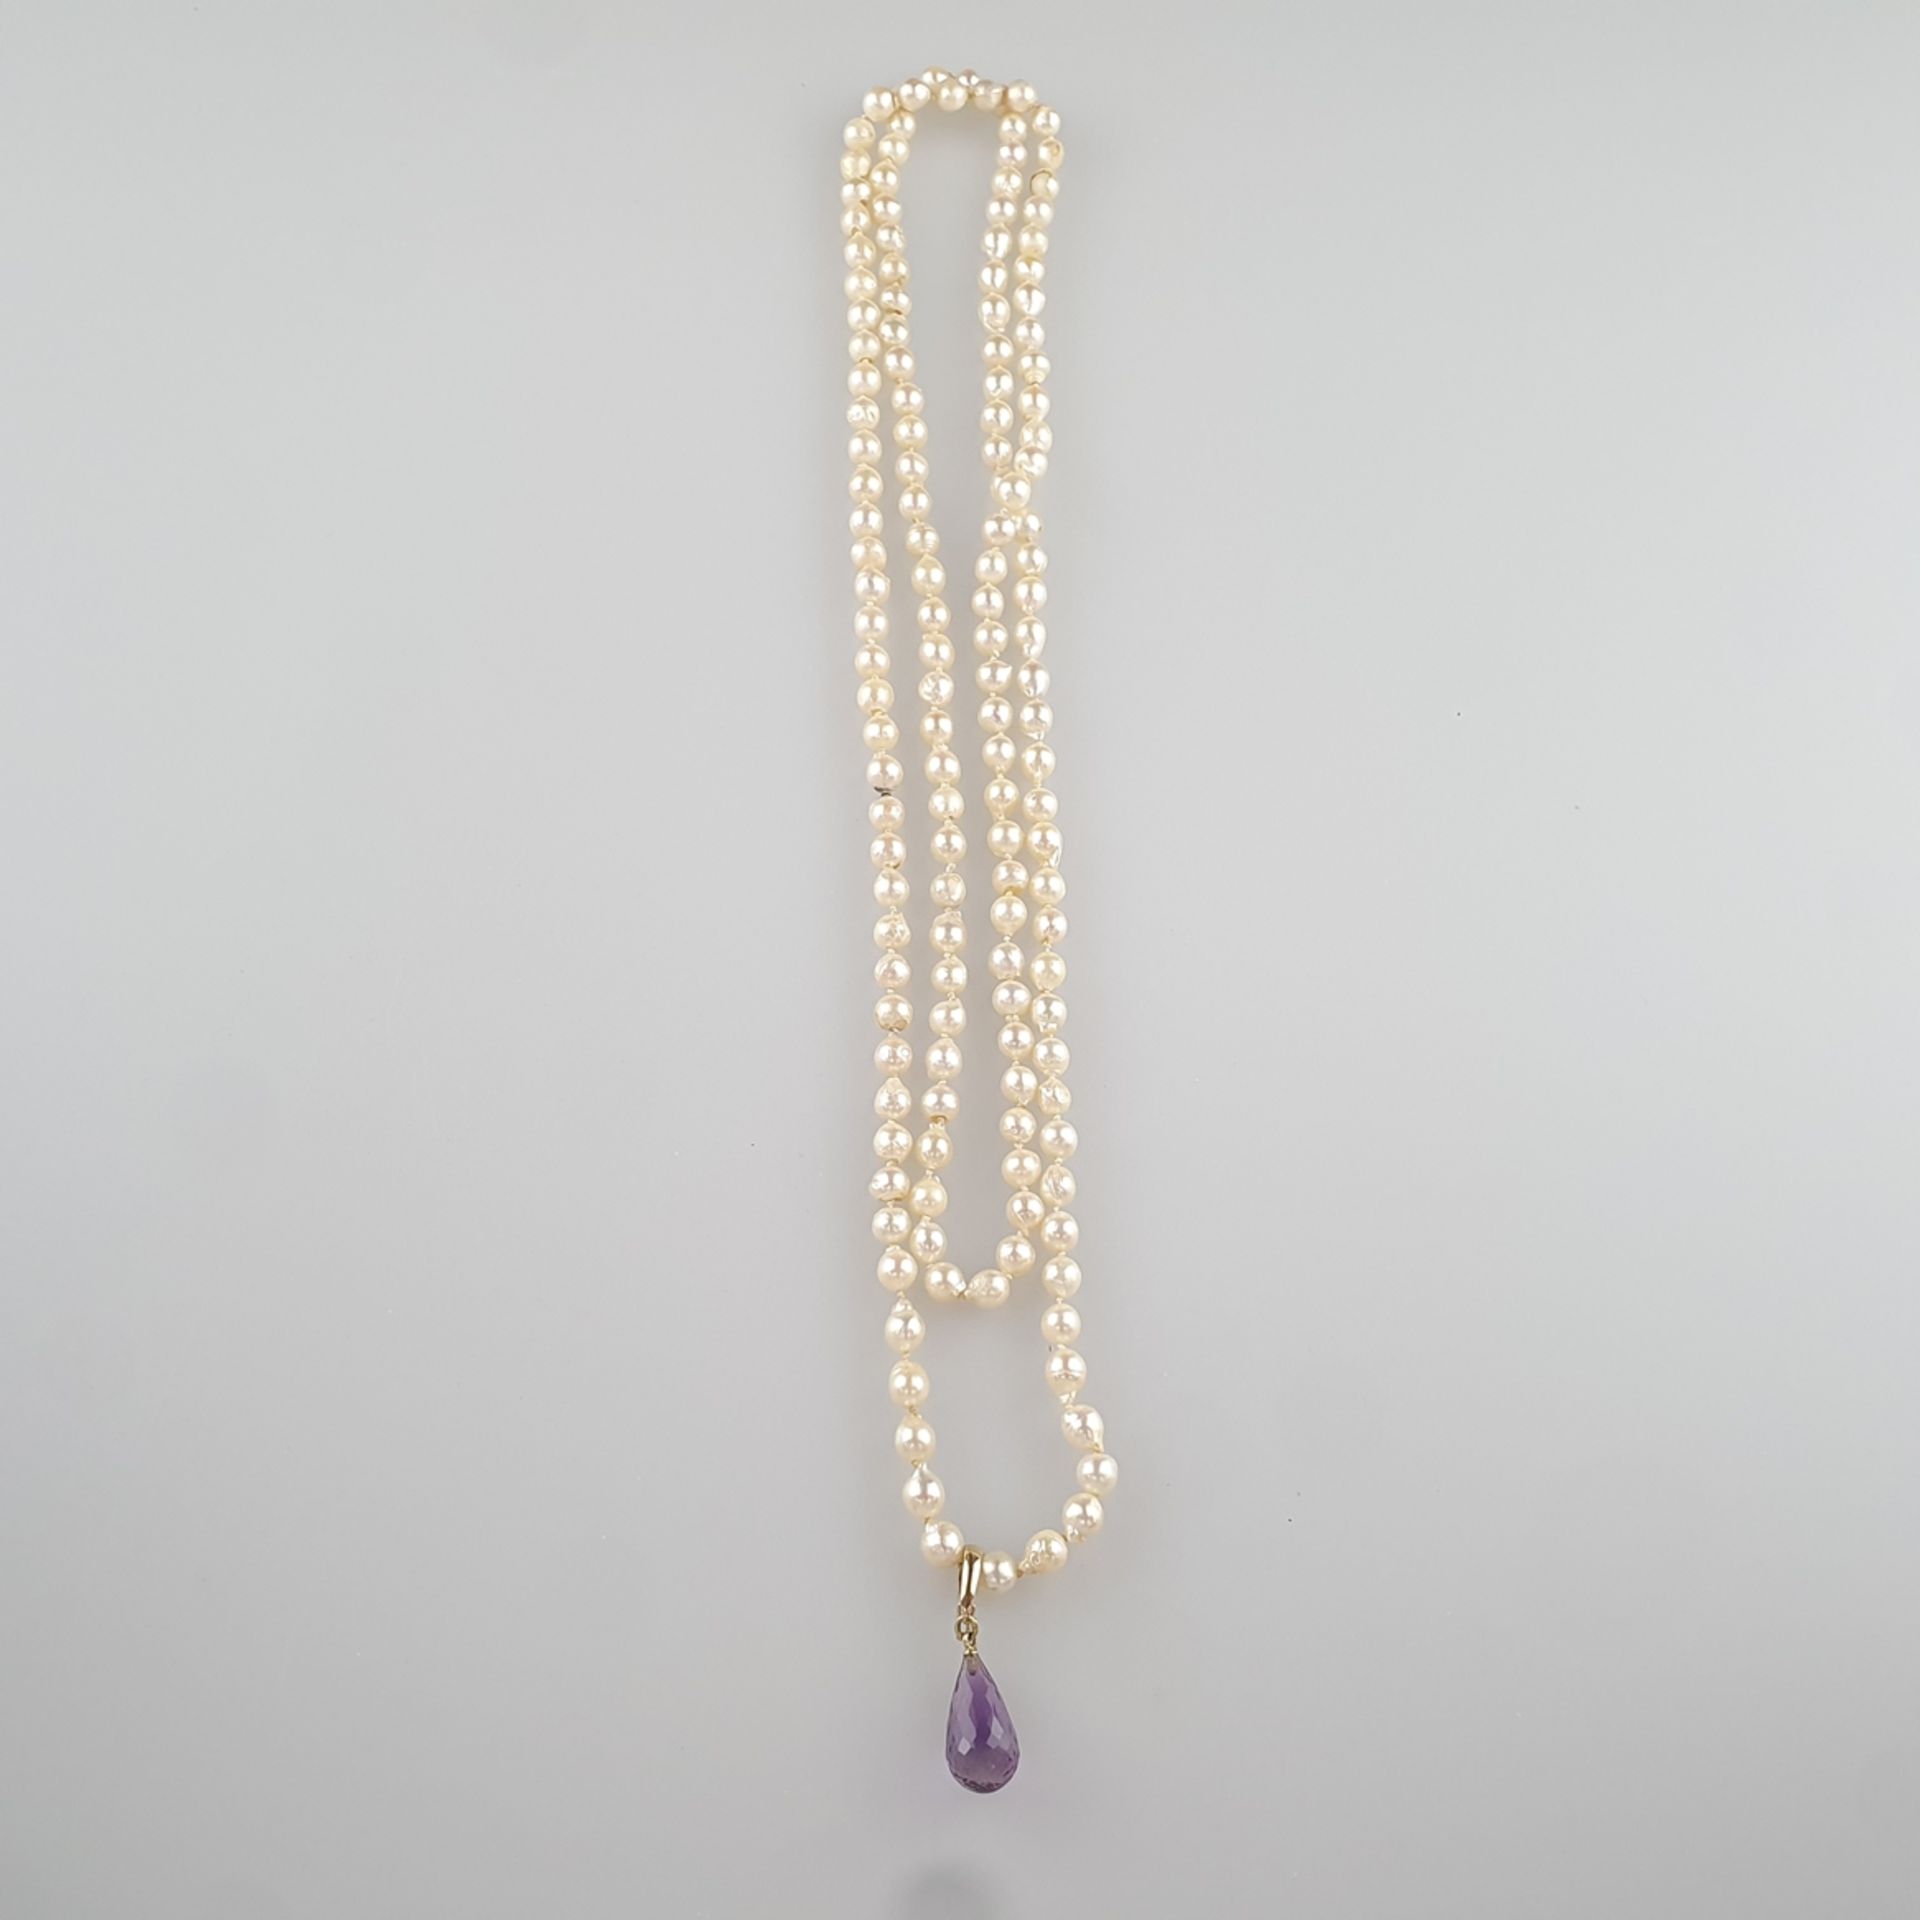 Lange Perlenkette mit Amethyst-Clip - barocke weiße Zuchtperlen von ca. 5-7 mm- Länge, in Einzelkno - Image 3 of 3